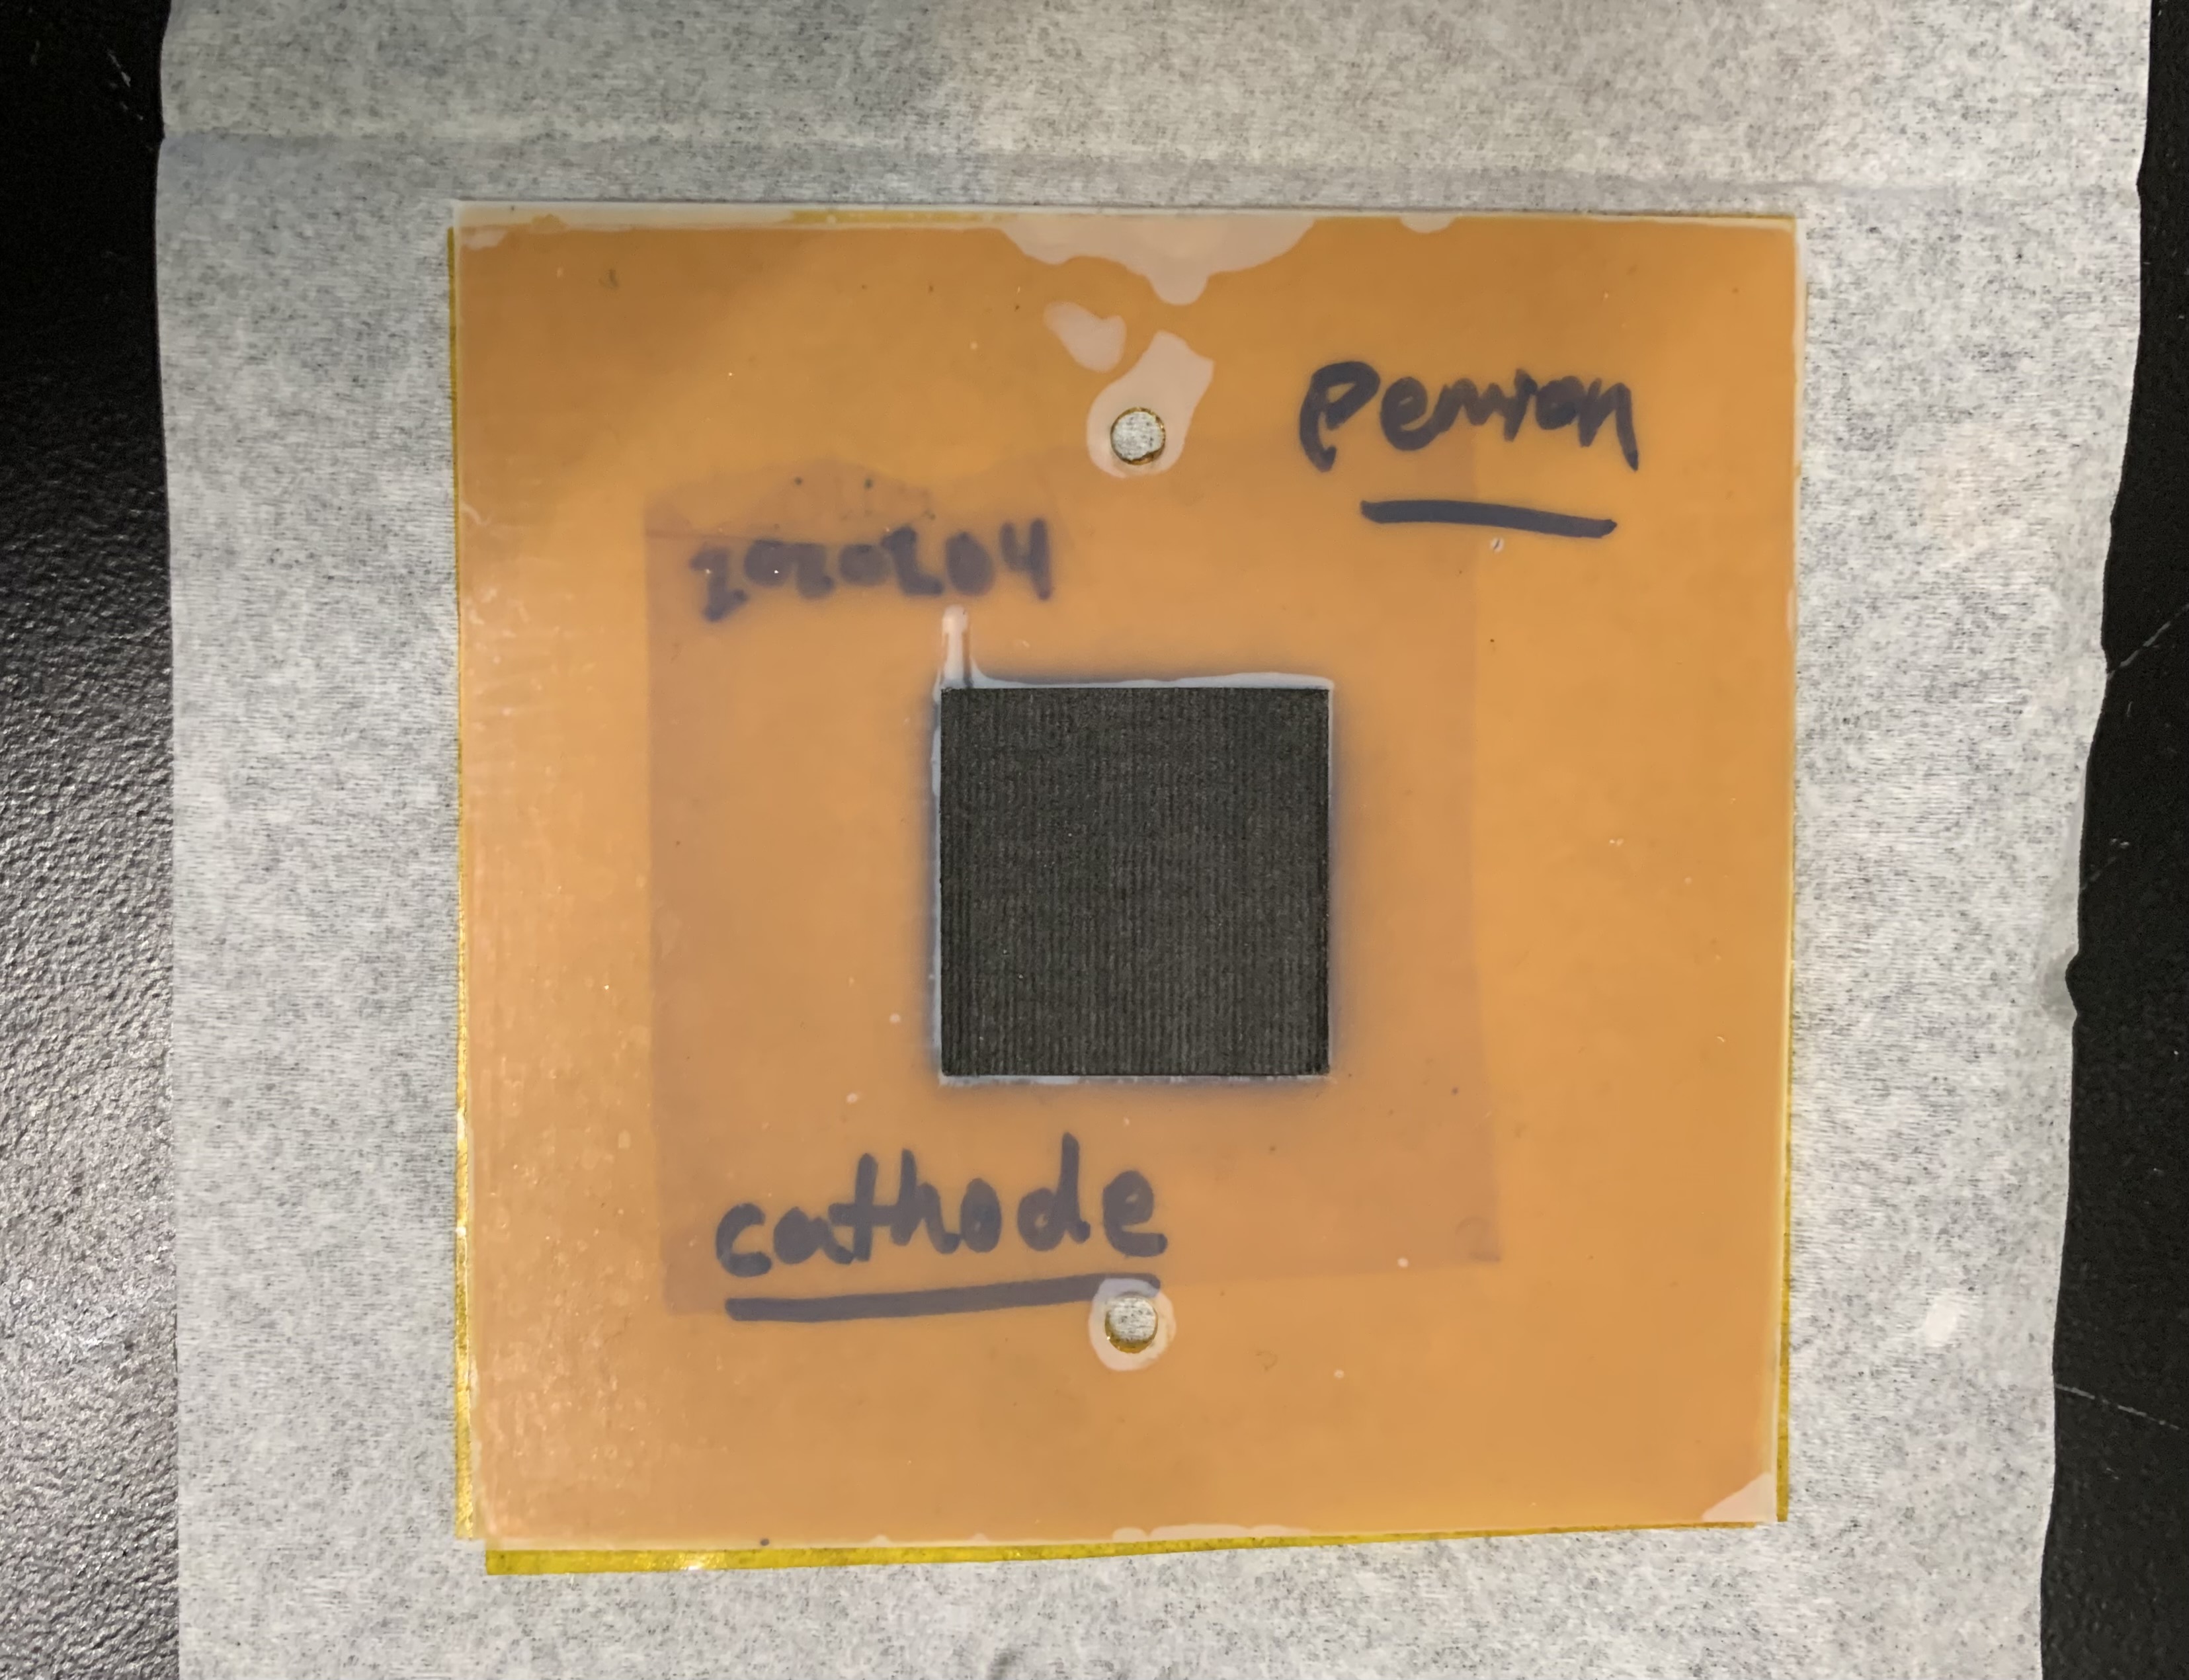 A 5 cm² Fuel Cell Membrane